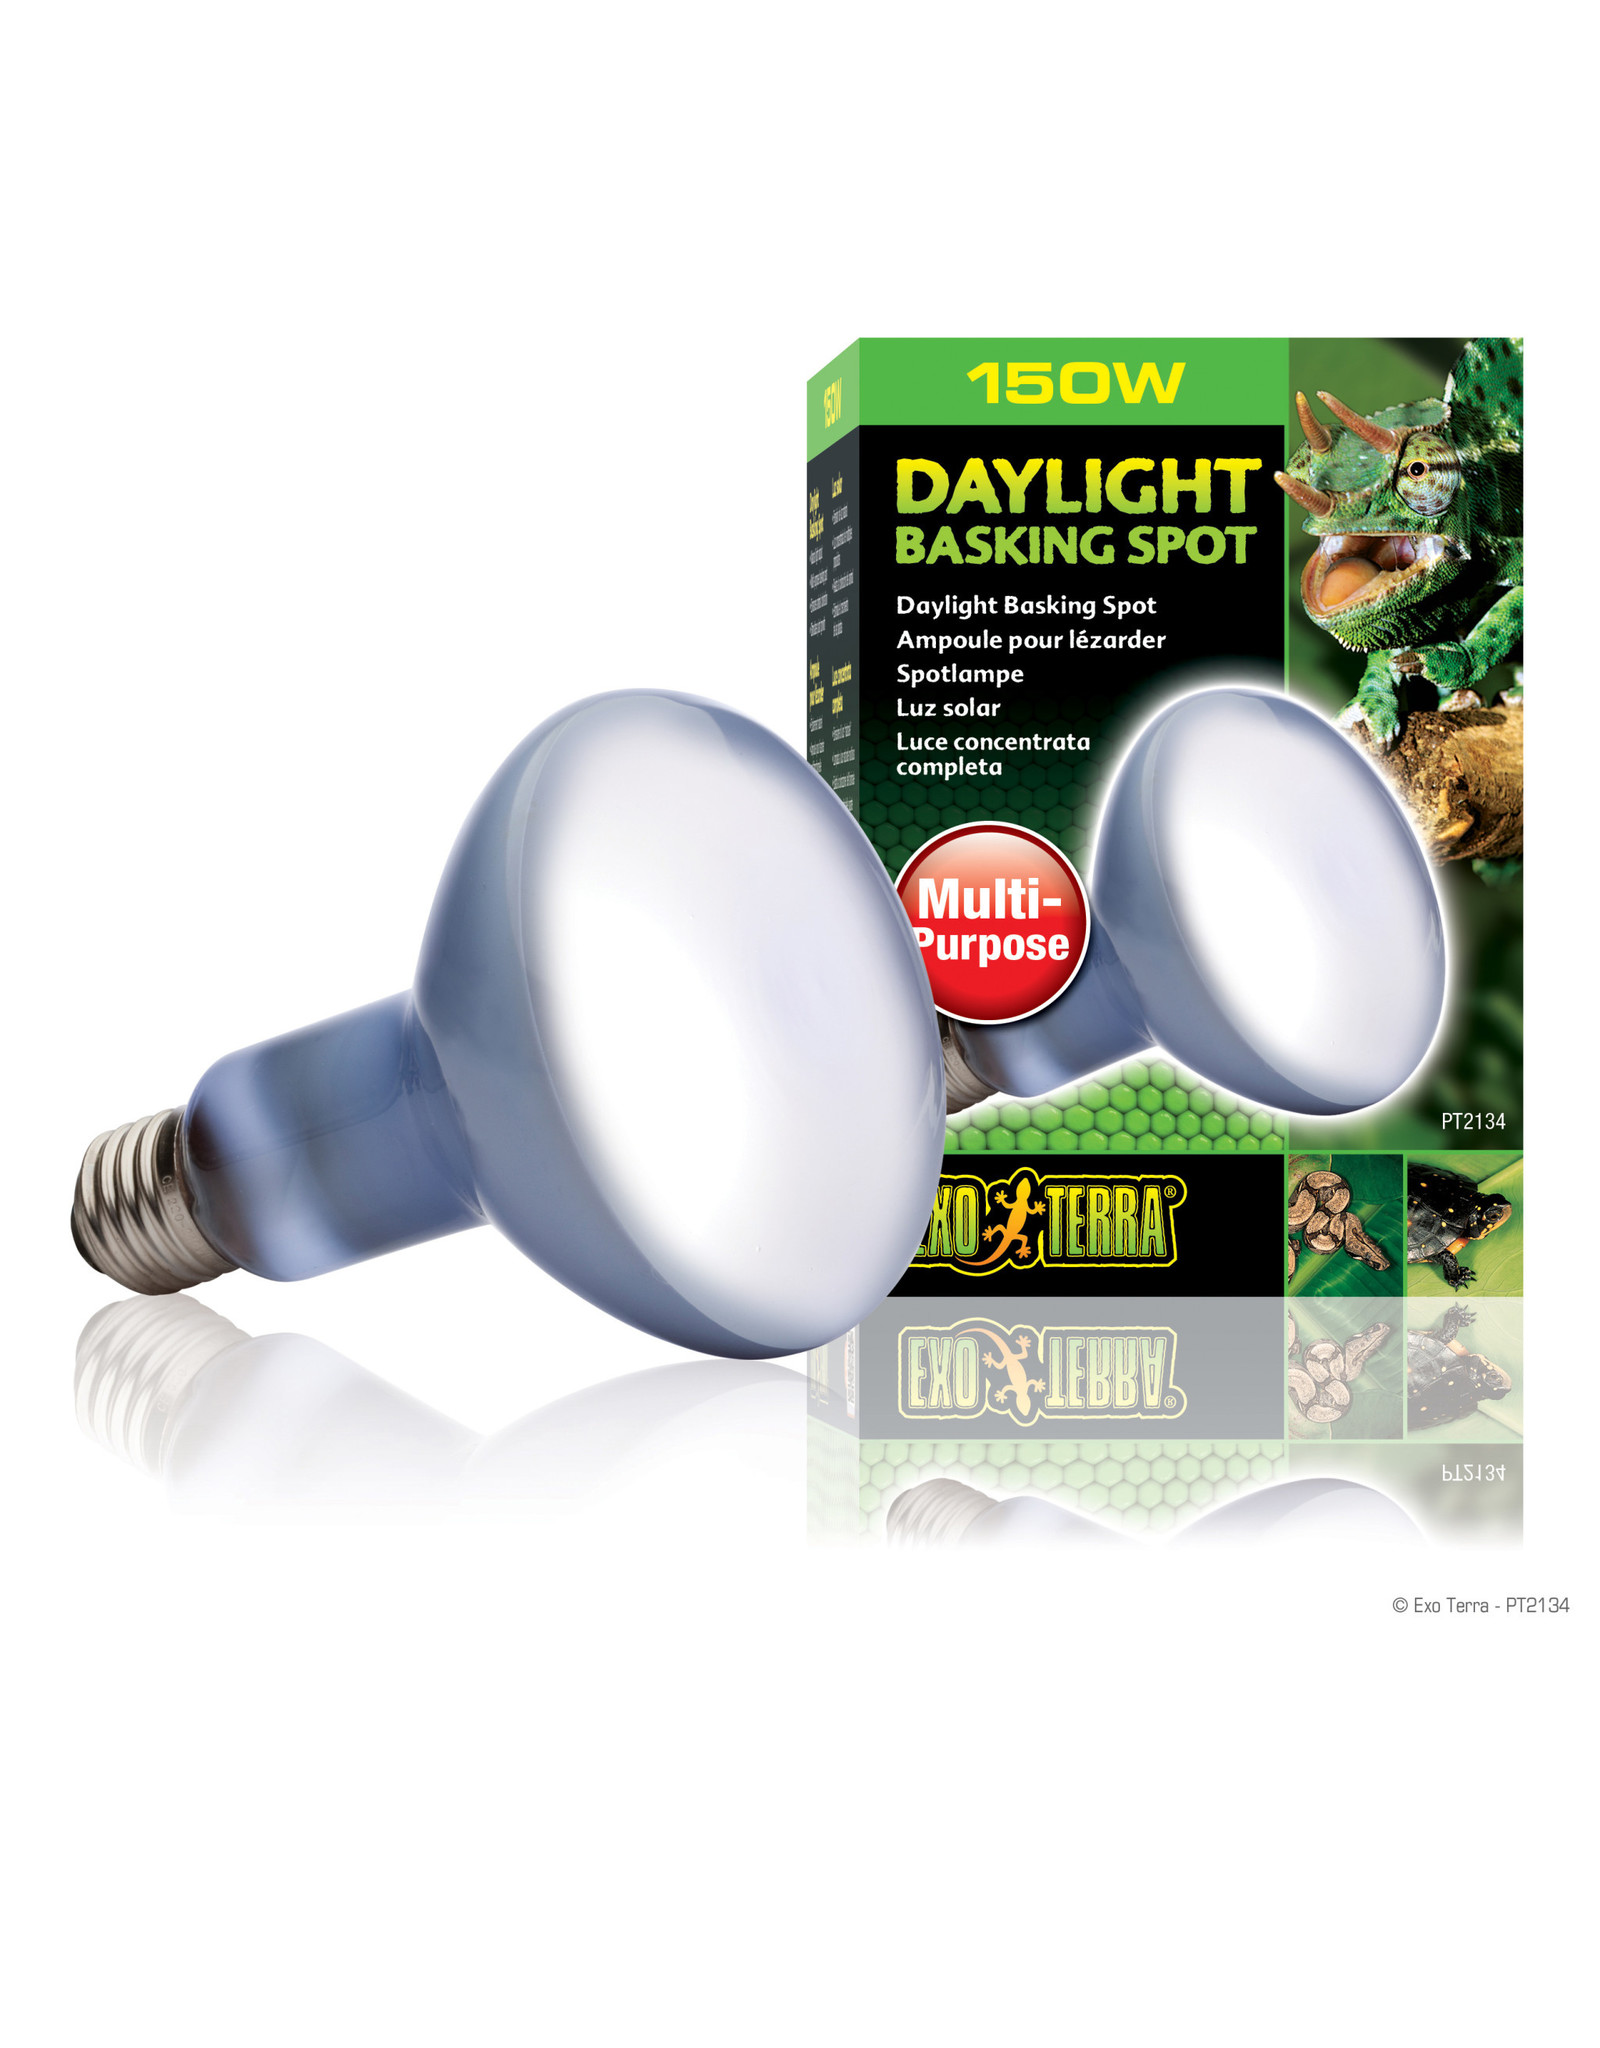 Exo Terra Daylight Basking Spot Lamp R30/150W